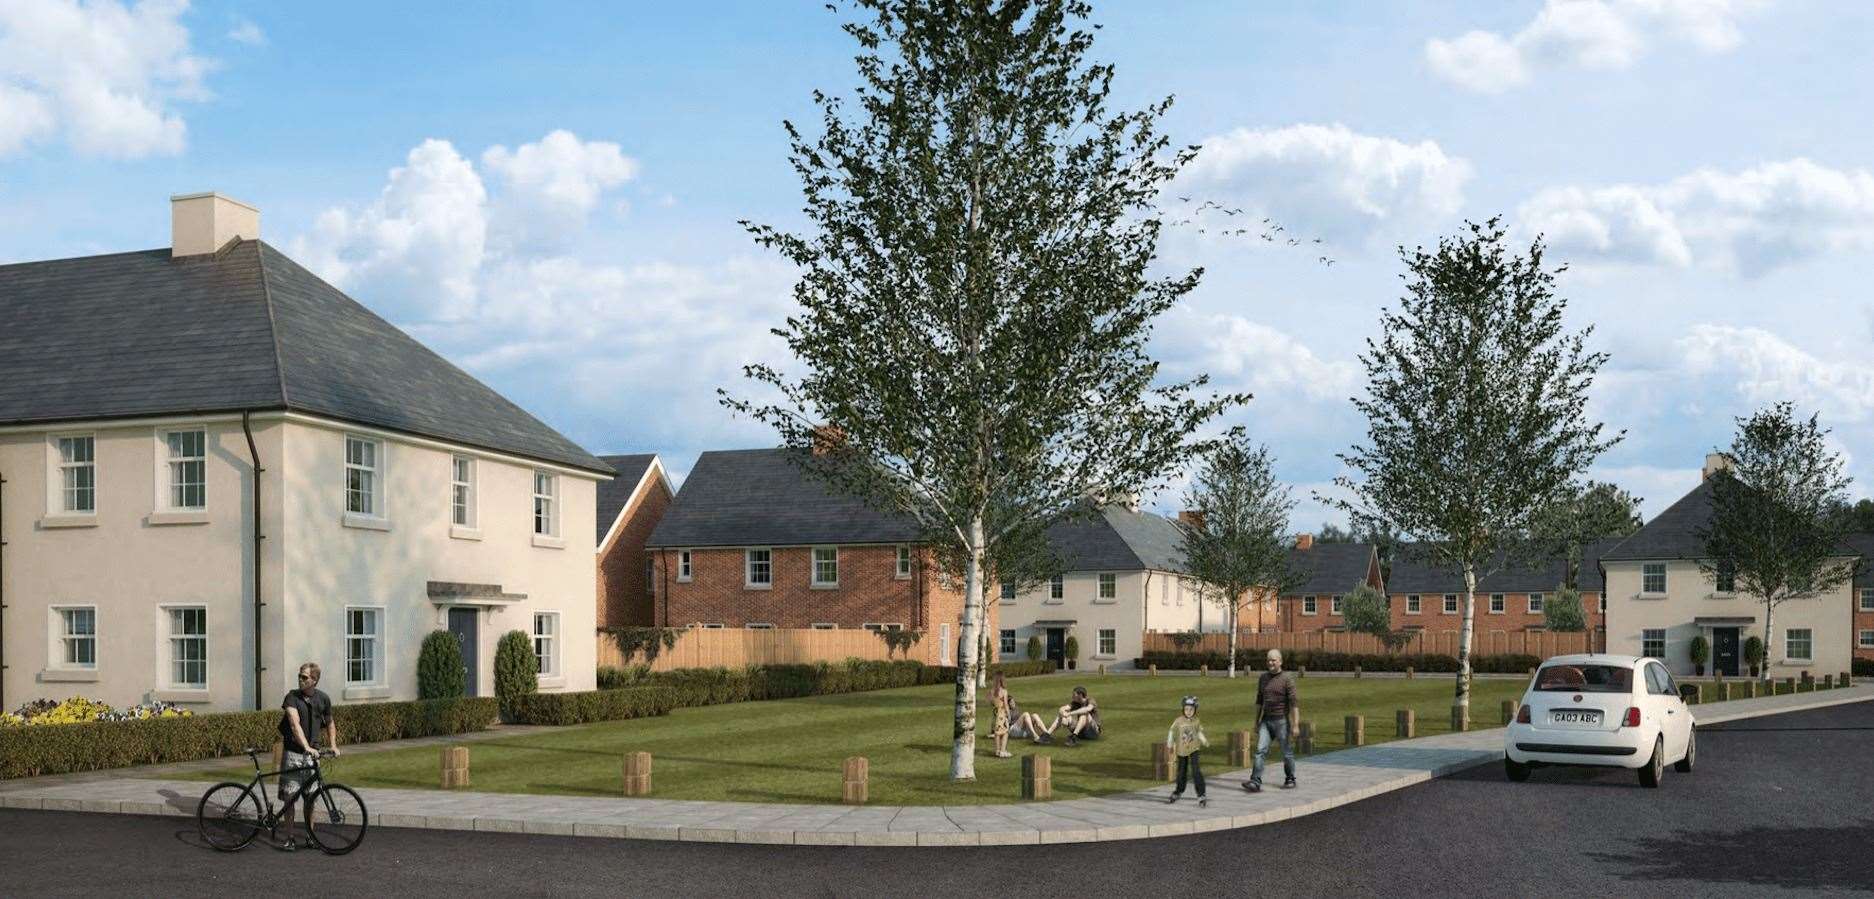 Pictures show Quinn Estates’ plans for new homes at Cottington Park near Deal